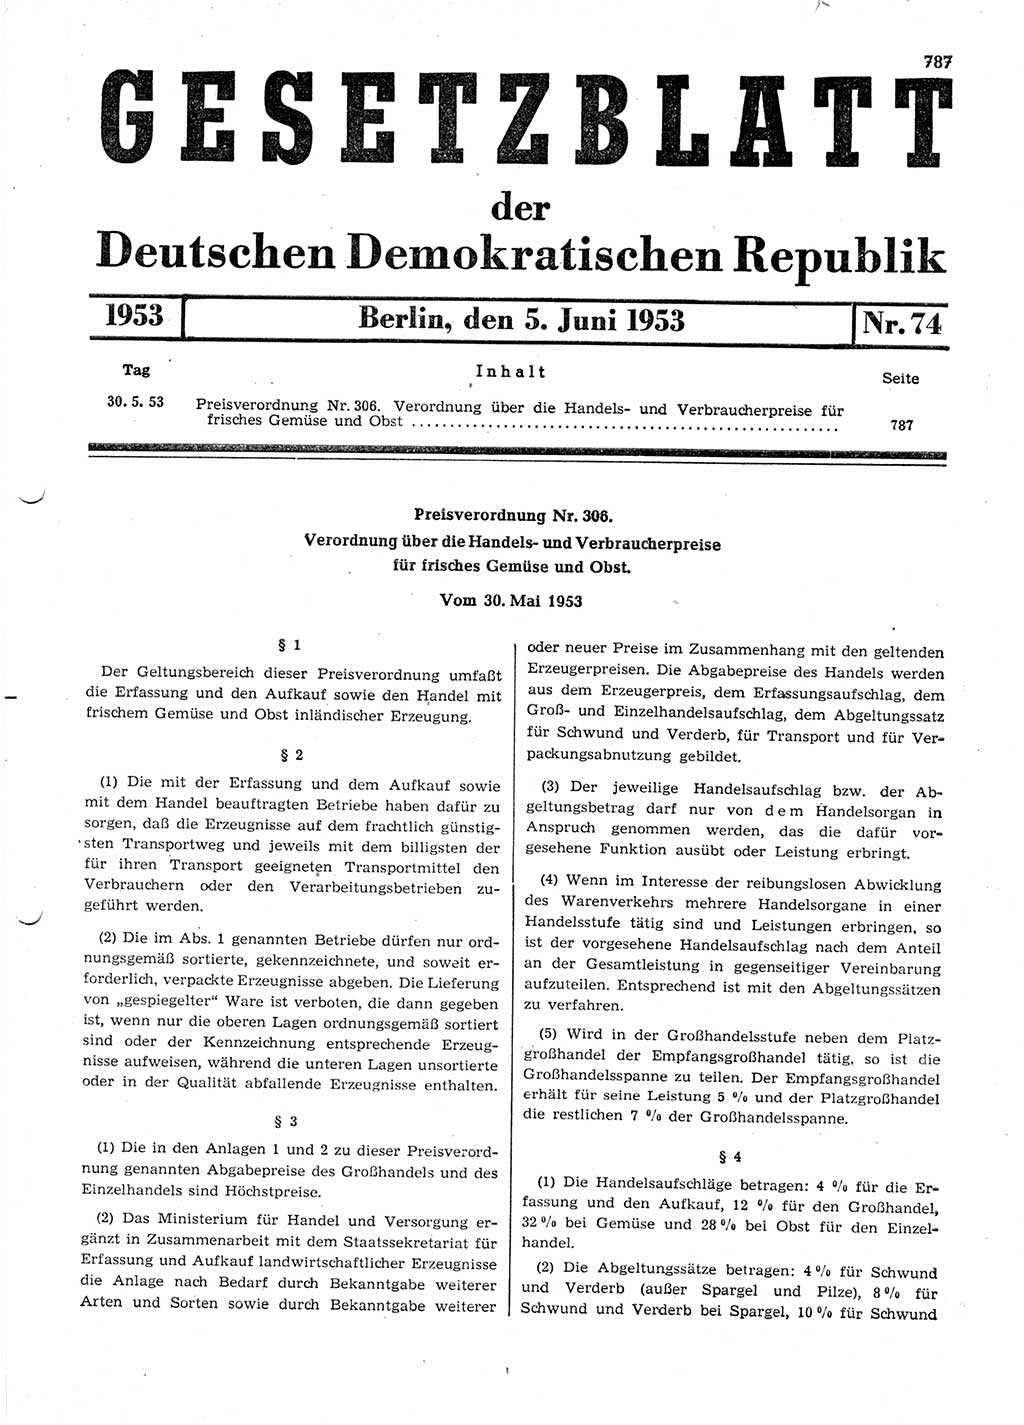 Gesetzblatt (GBl.) der Deutschen Demokratischen Republik (DDR) 1953, Seite 787 (GBl. DDR 1953, S. 787)